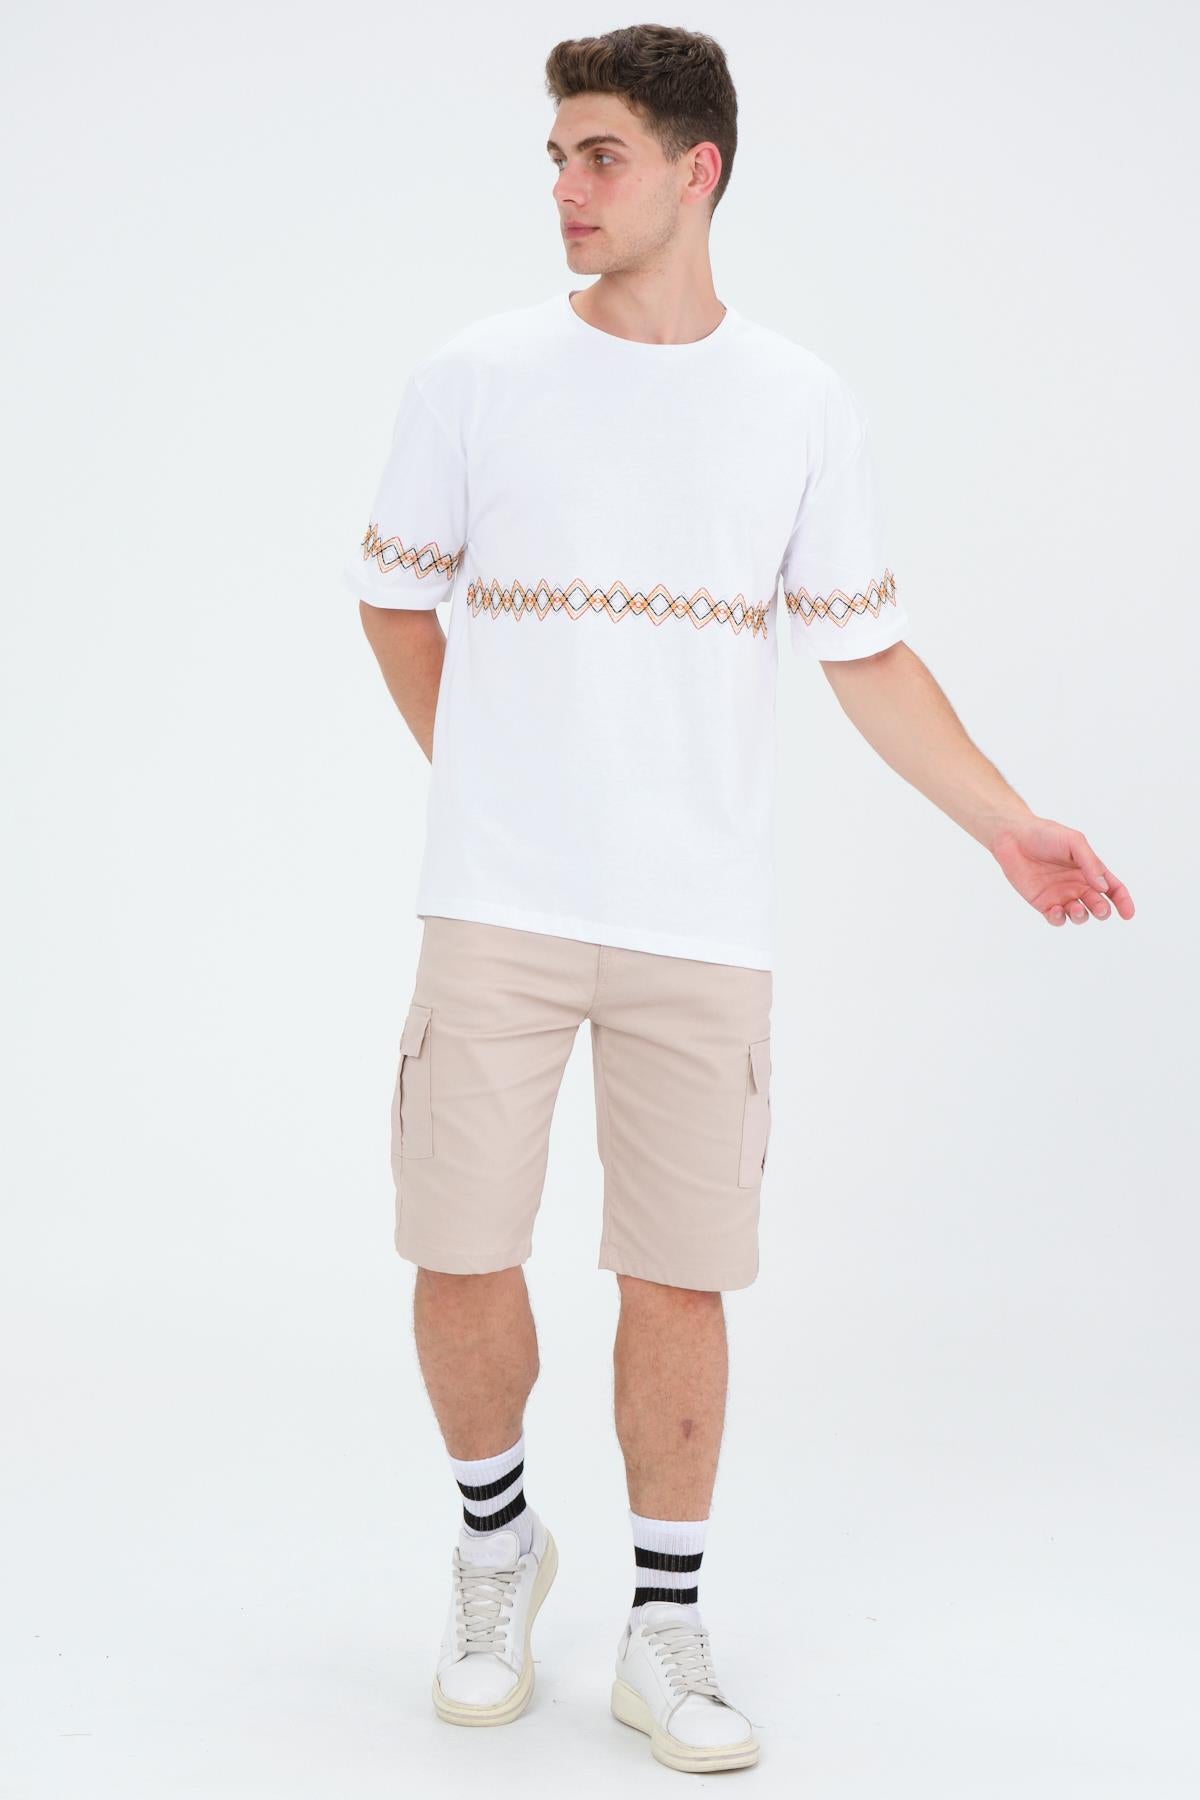 Oversizle fit cotton short sleeve Basic embroidery Crew Neck unisex t -shirt